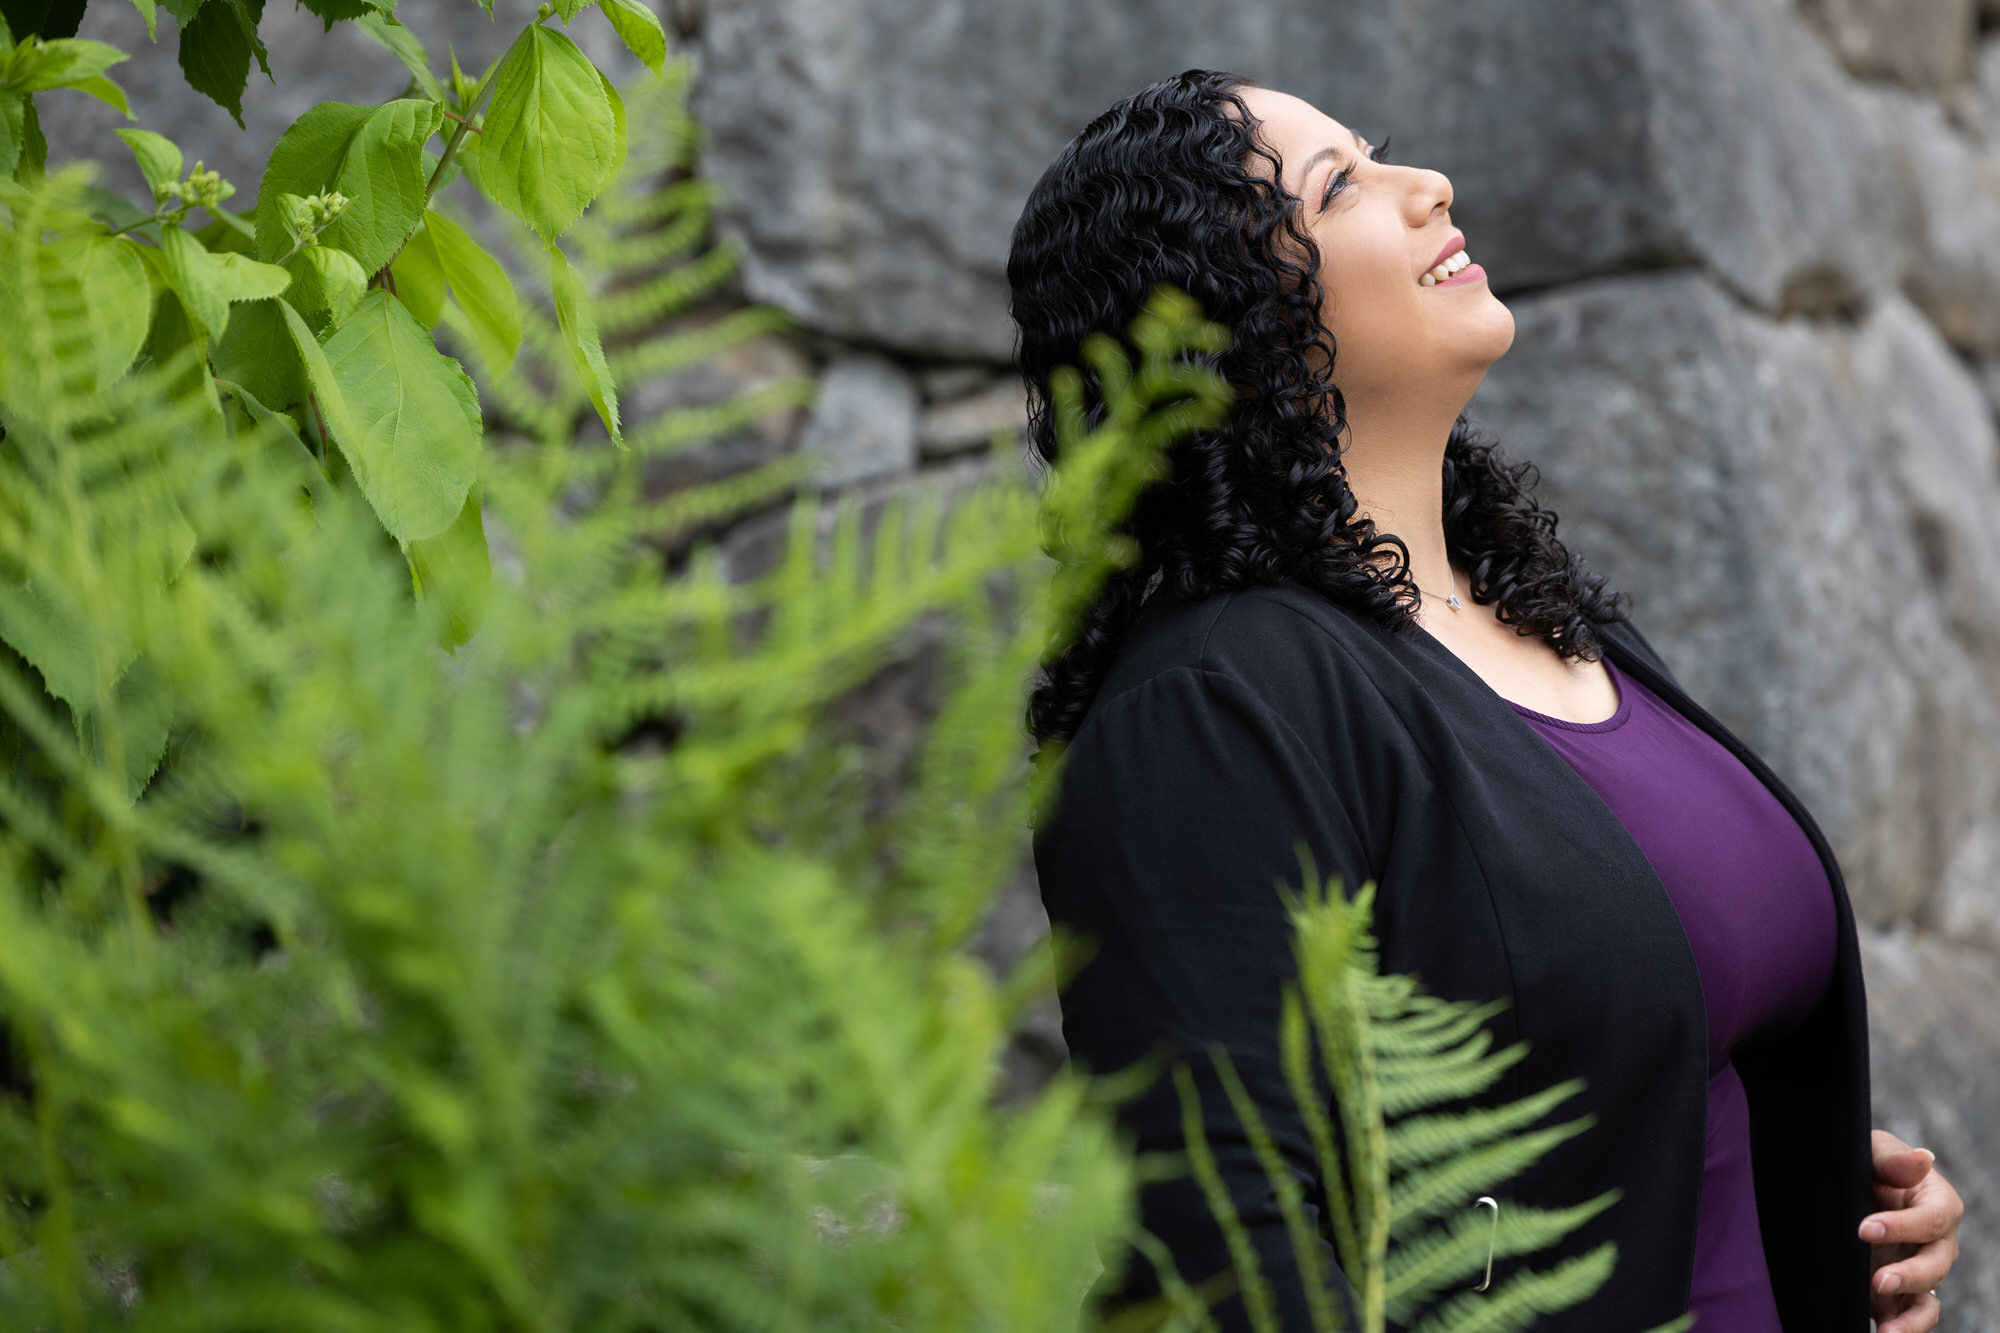 Участница Empowered Voices в королевском фиолетовом топе и черном кардигане улыбается и смотрит в небо, прислонившись к серой каменной стене возле зеленой листвы папоротника.